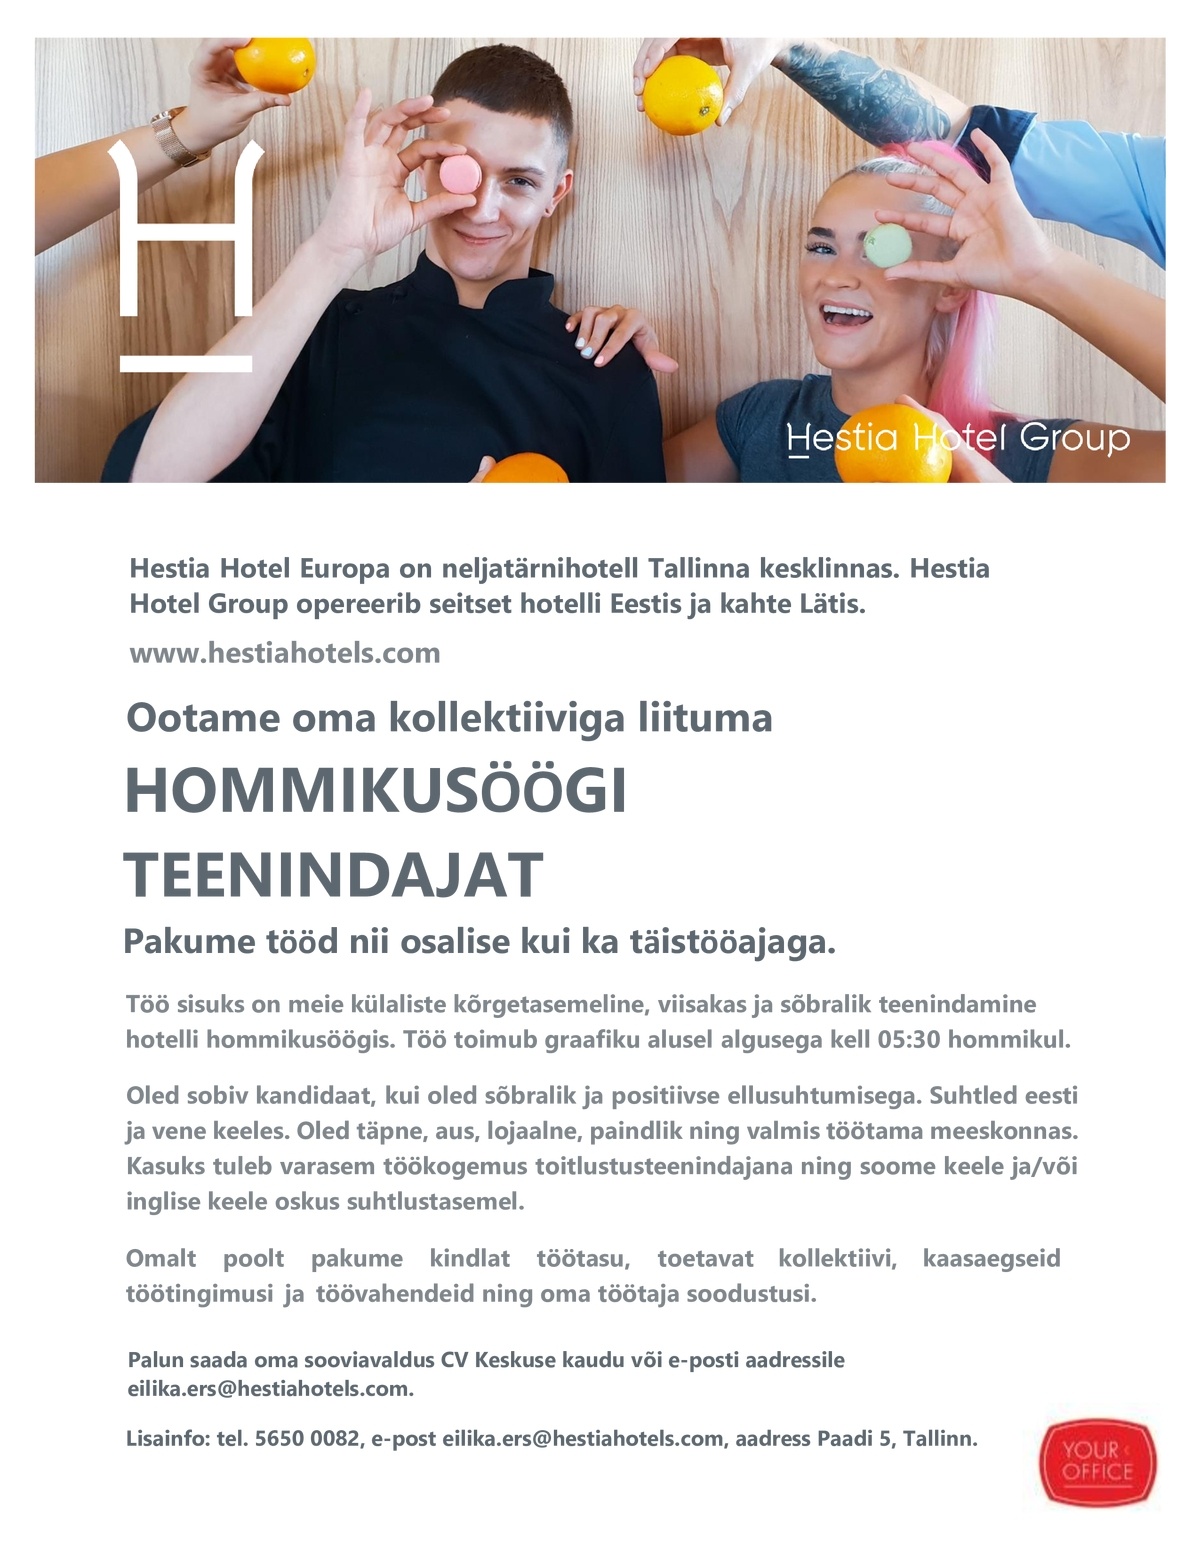 Hestia Hotel Europa Hommikusöögi teenindaja (Hestia Hotel Europa) algusega 5.30